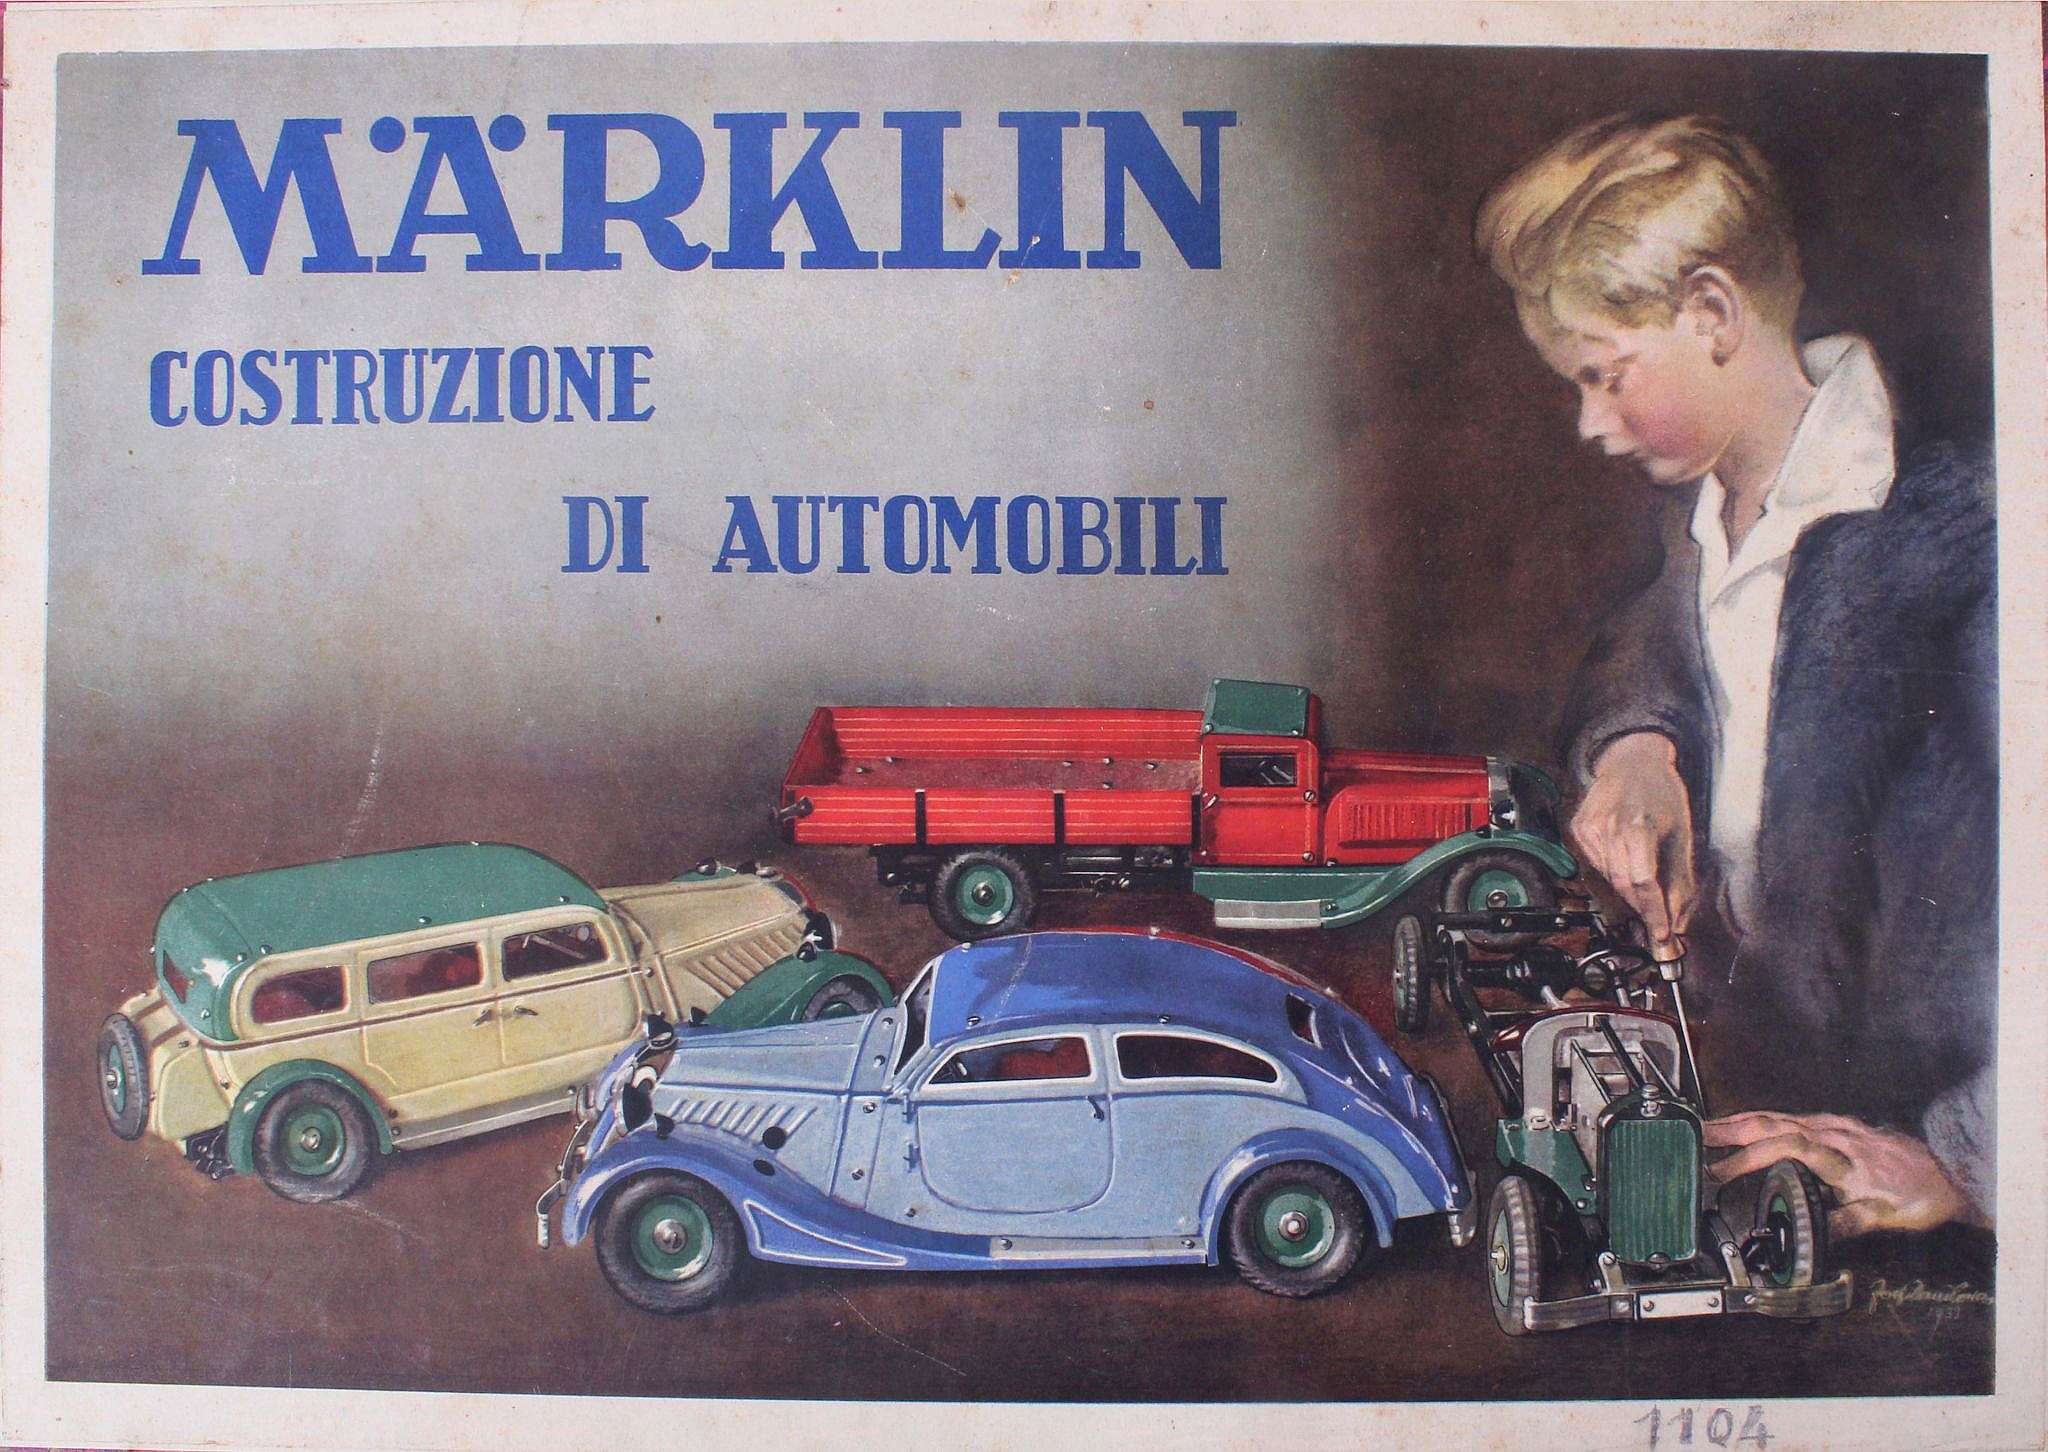 Märklin, a fine boxed automobile 1104p, in parts, to be modelled, 'Costruzione Di Automobili' (the - Image 3 of 3